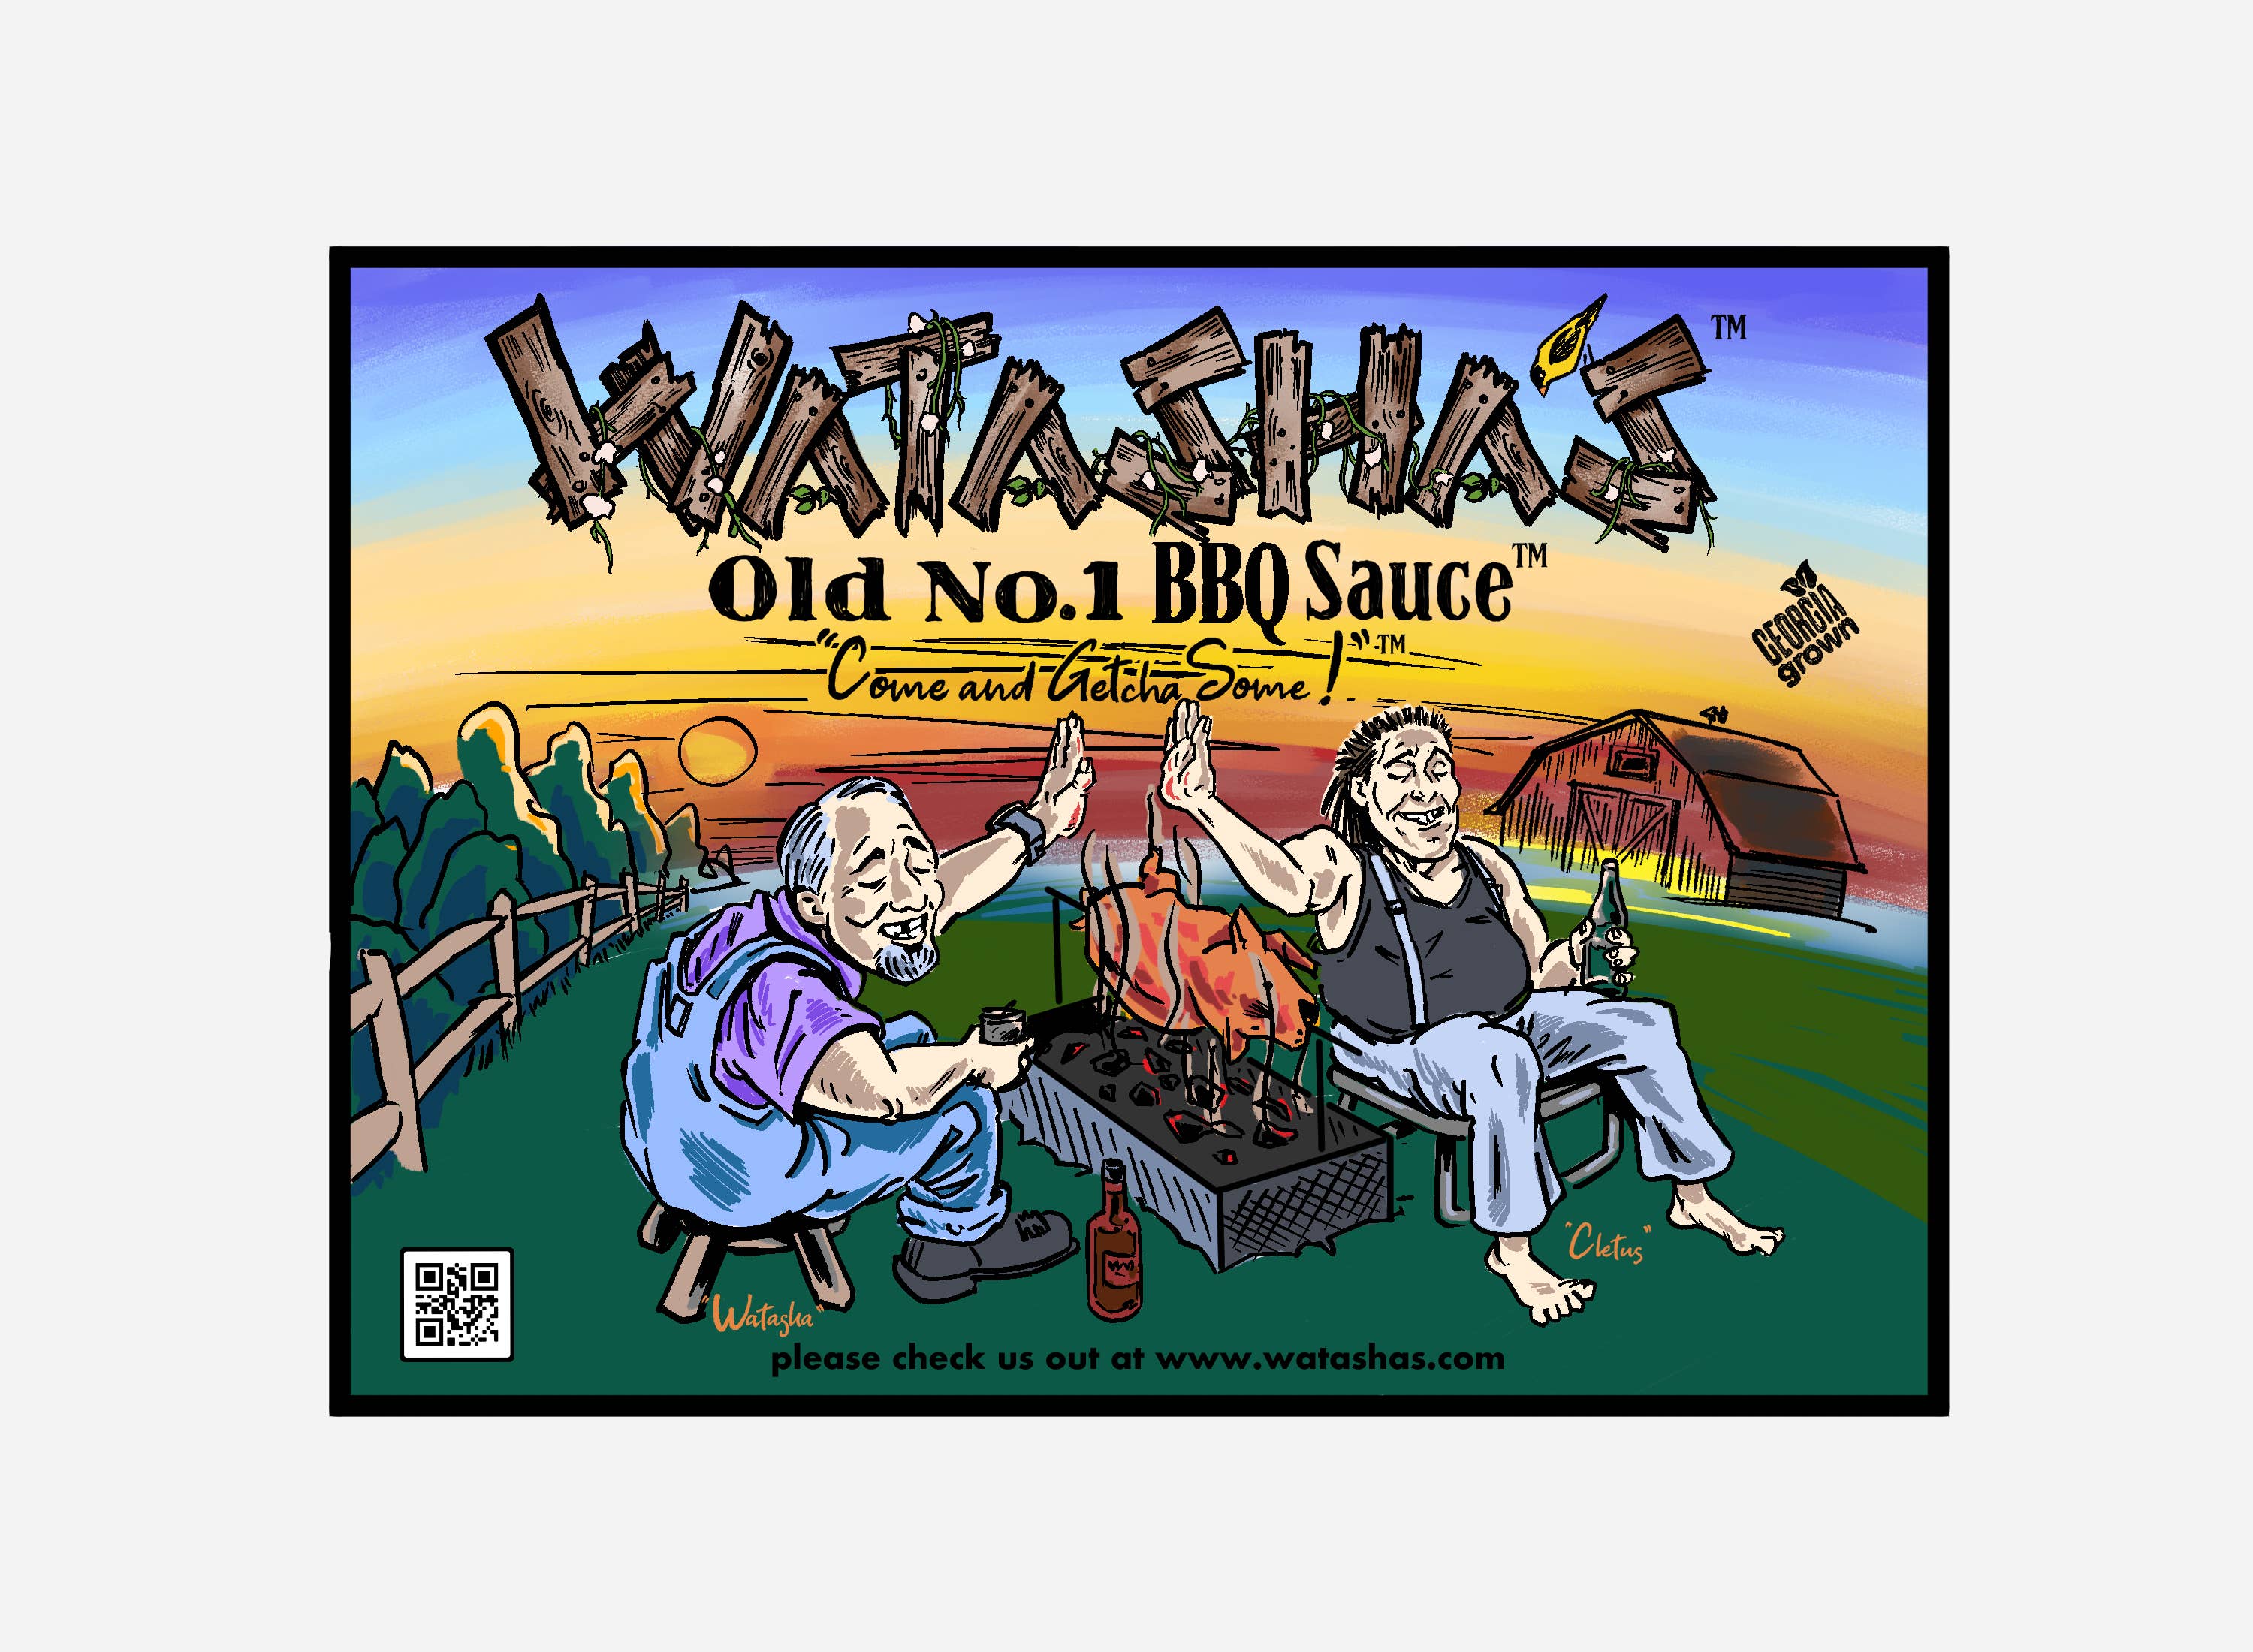 Watasha Sauce Company, LLC wholesale products